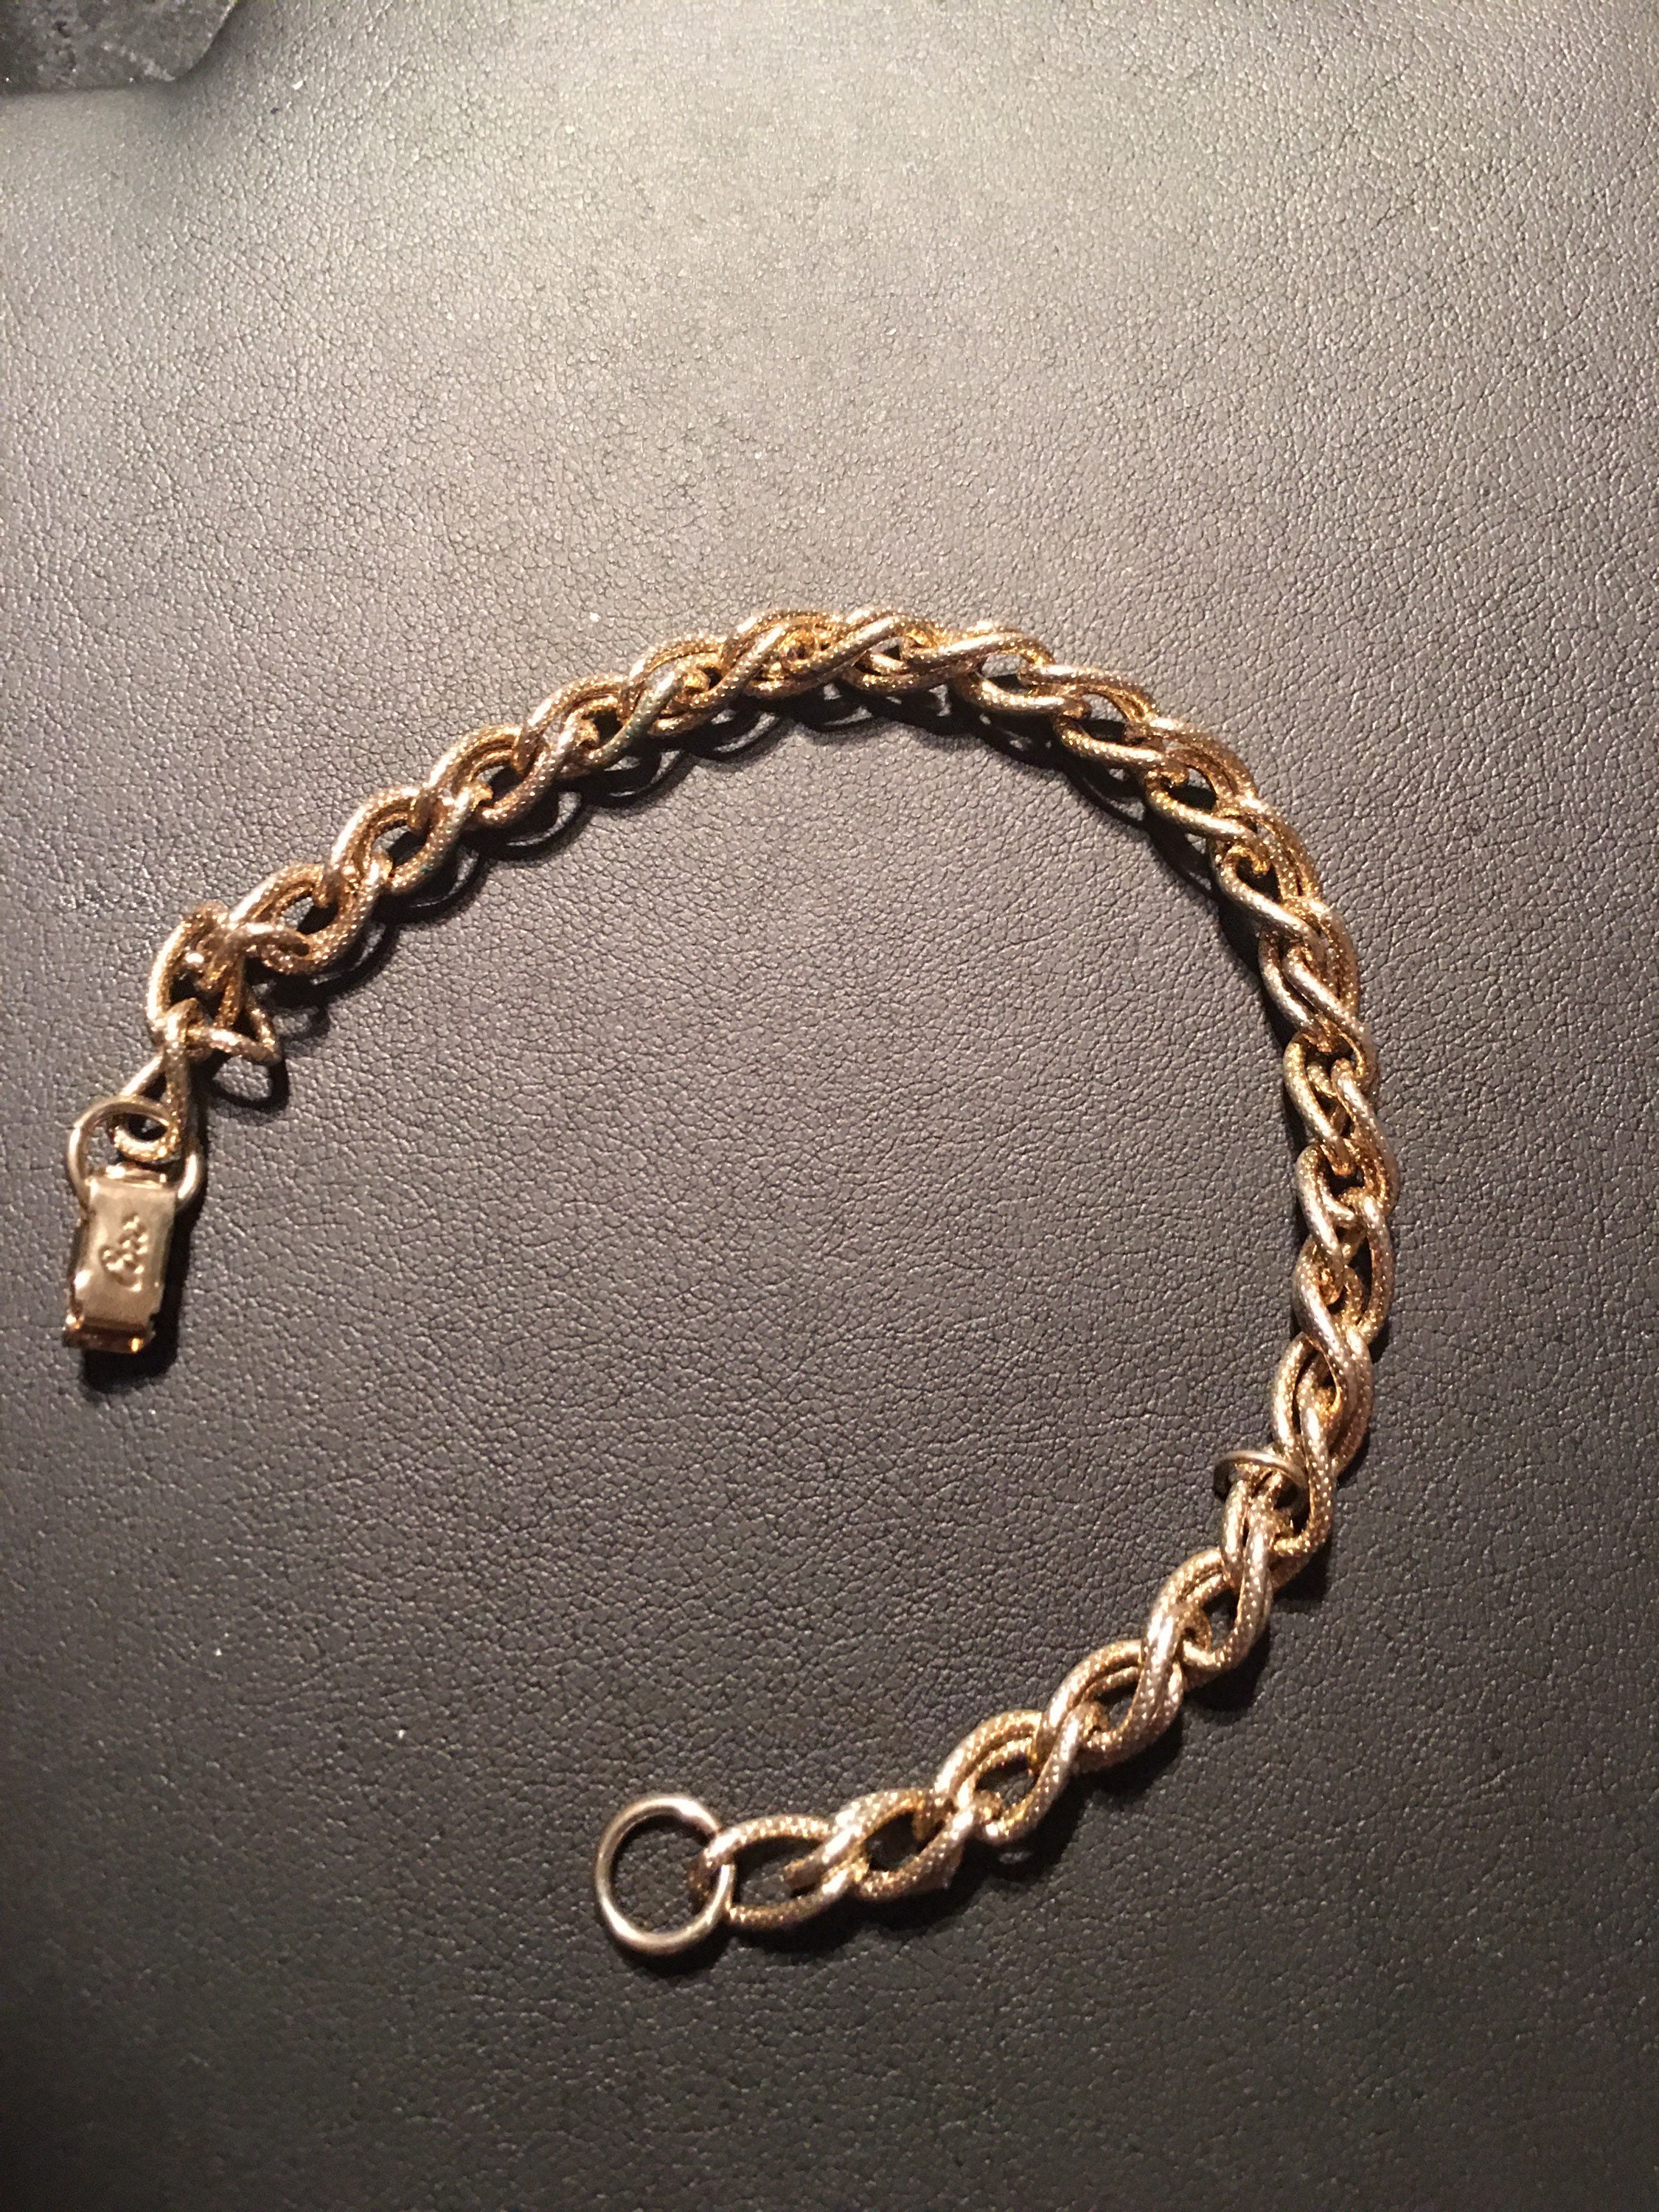 Vintage 10K solid gold bracelet | Etsy